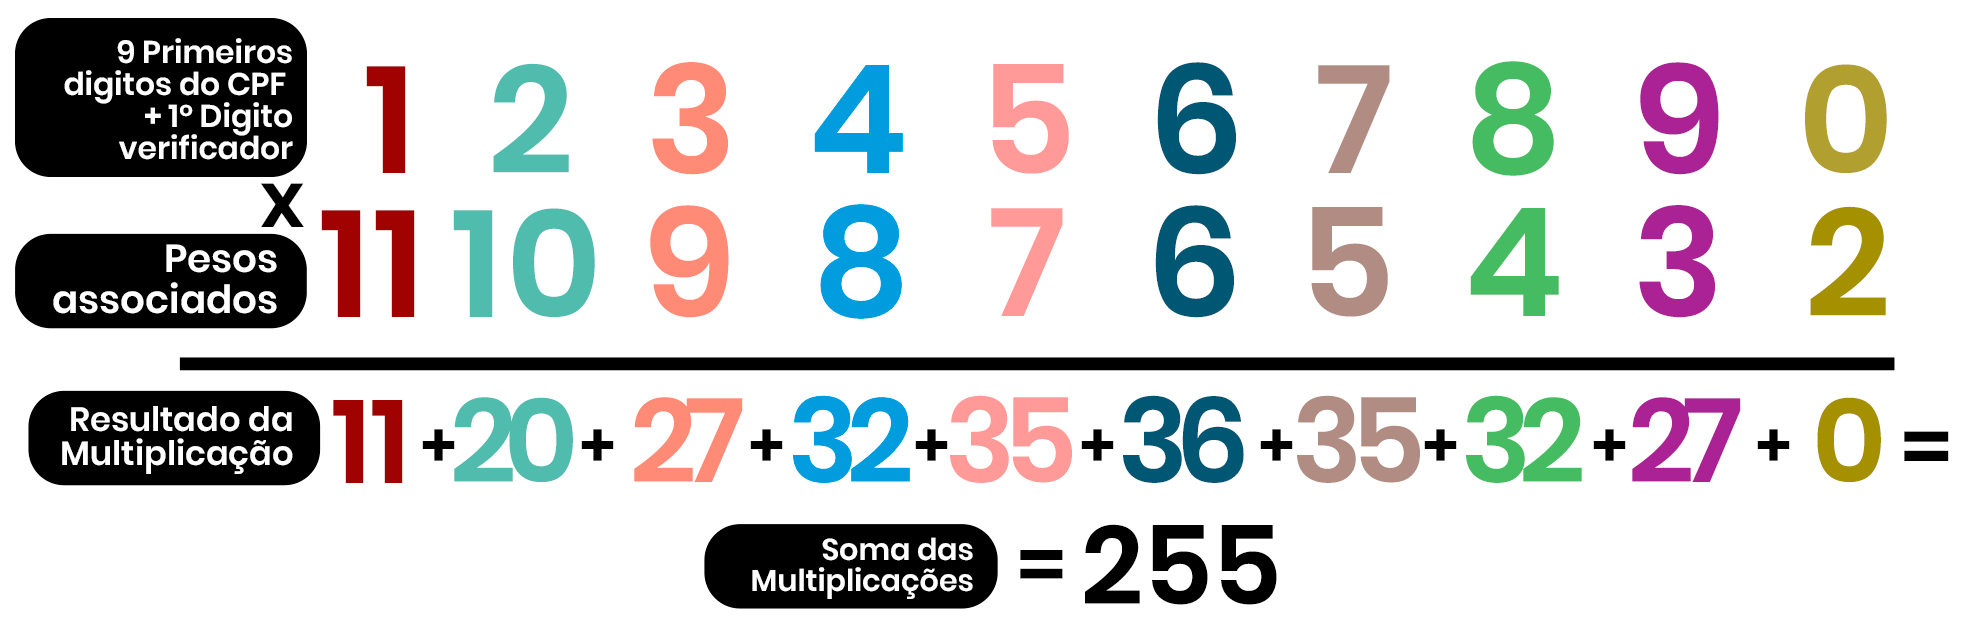 Imagem ilustra a multiplicação dos 10 primeiros dígitos do CPF (1234567890) e seus respectivos pesos (11,10,9,8,7,6,5,4,3,2); além disso mostra os resultados de cada multiplicação (11,20,27,32,35,36,35,27,0), os resultados das multiplicações foram somados para obter o número 255.